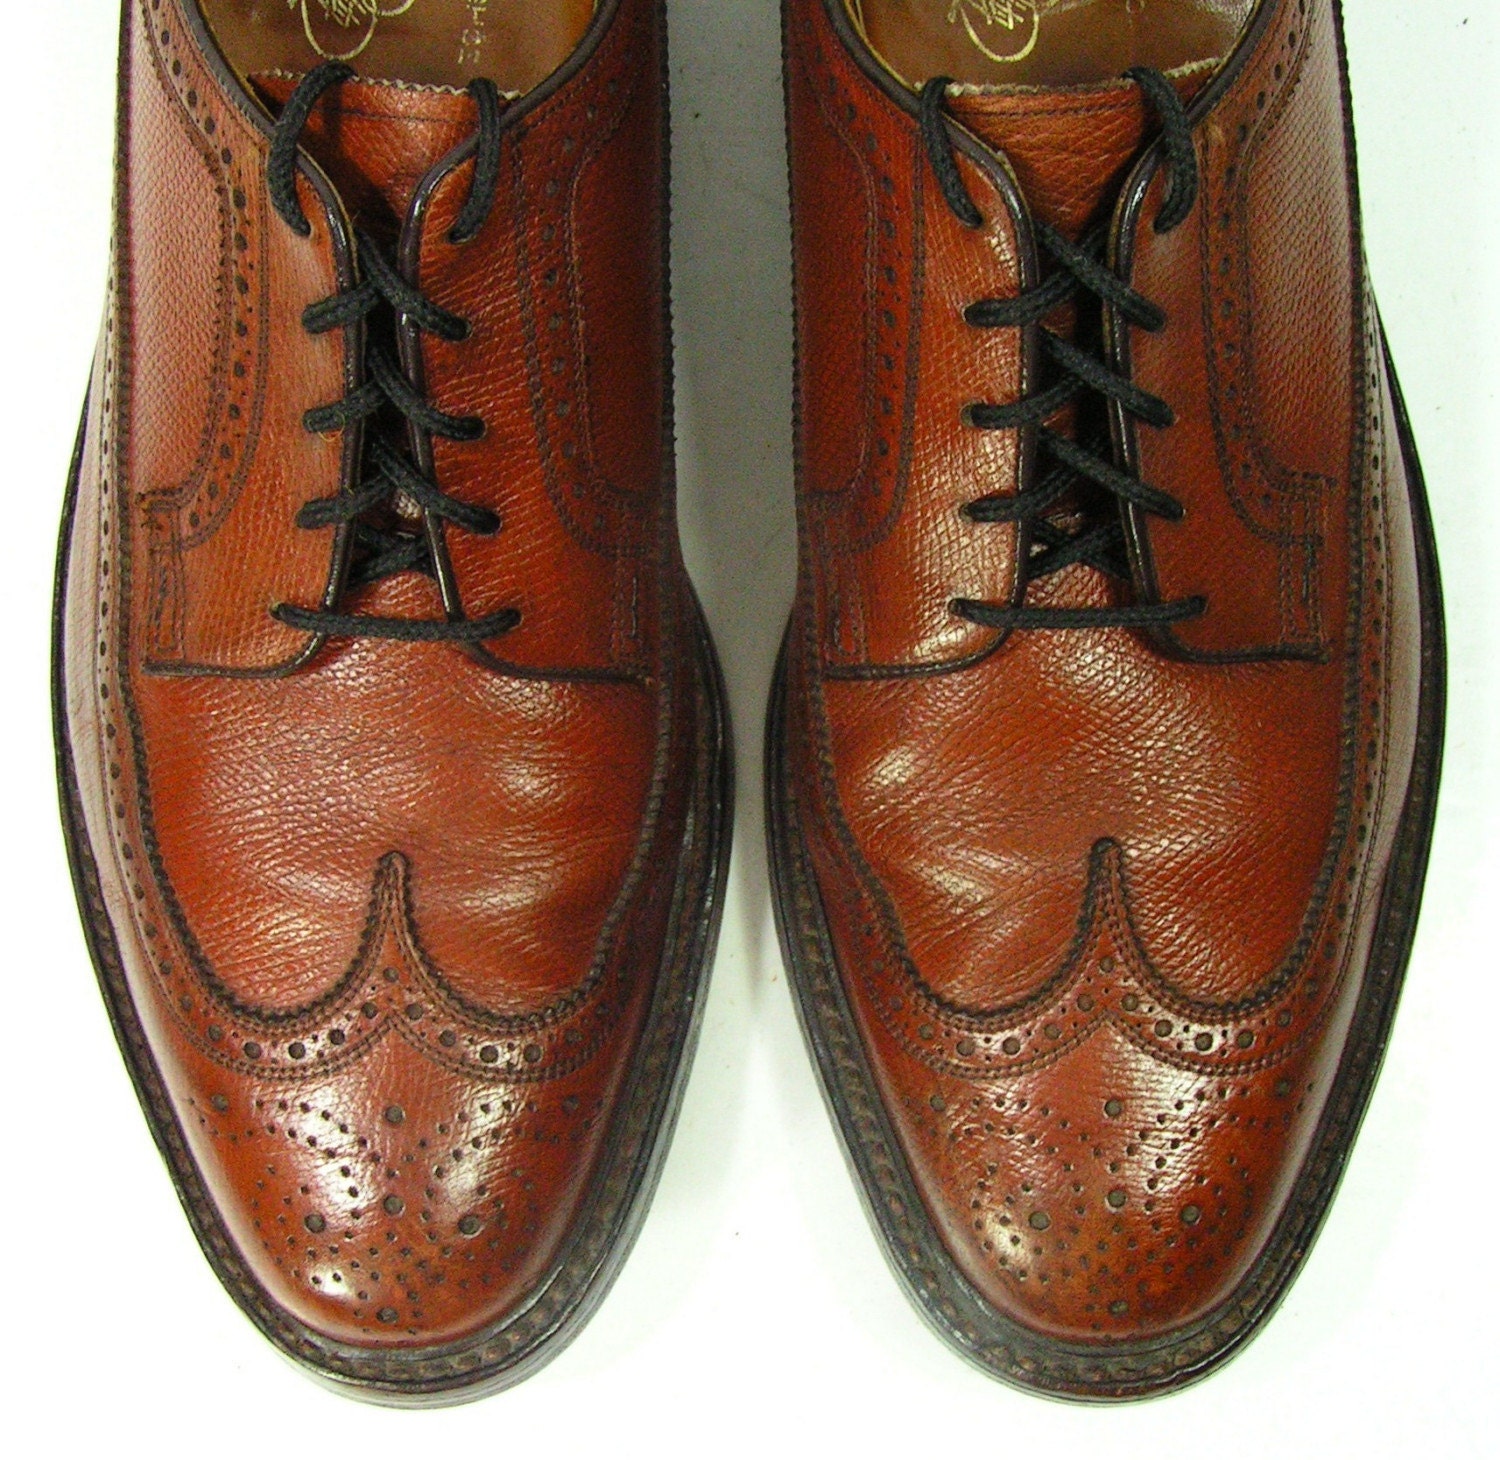 Florsheim Imperial wingtip shoes mens 12 D brown dress shoes